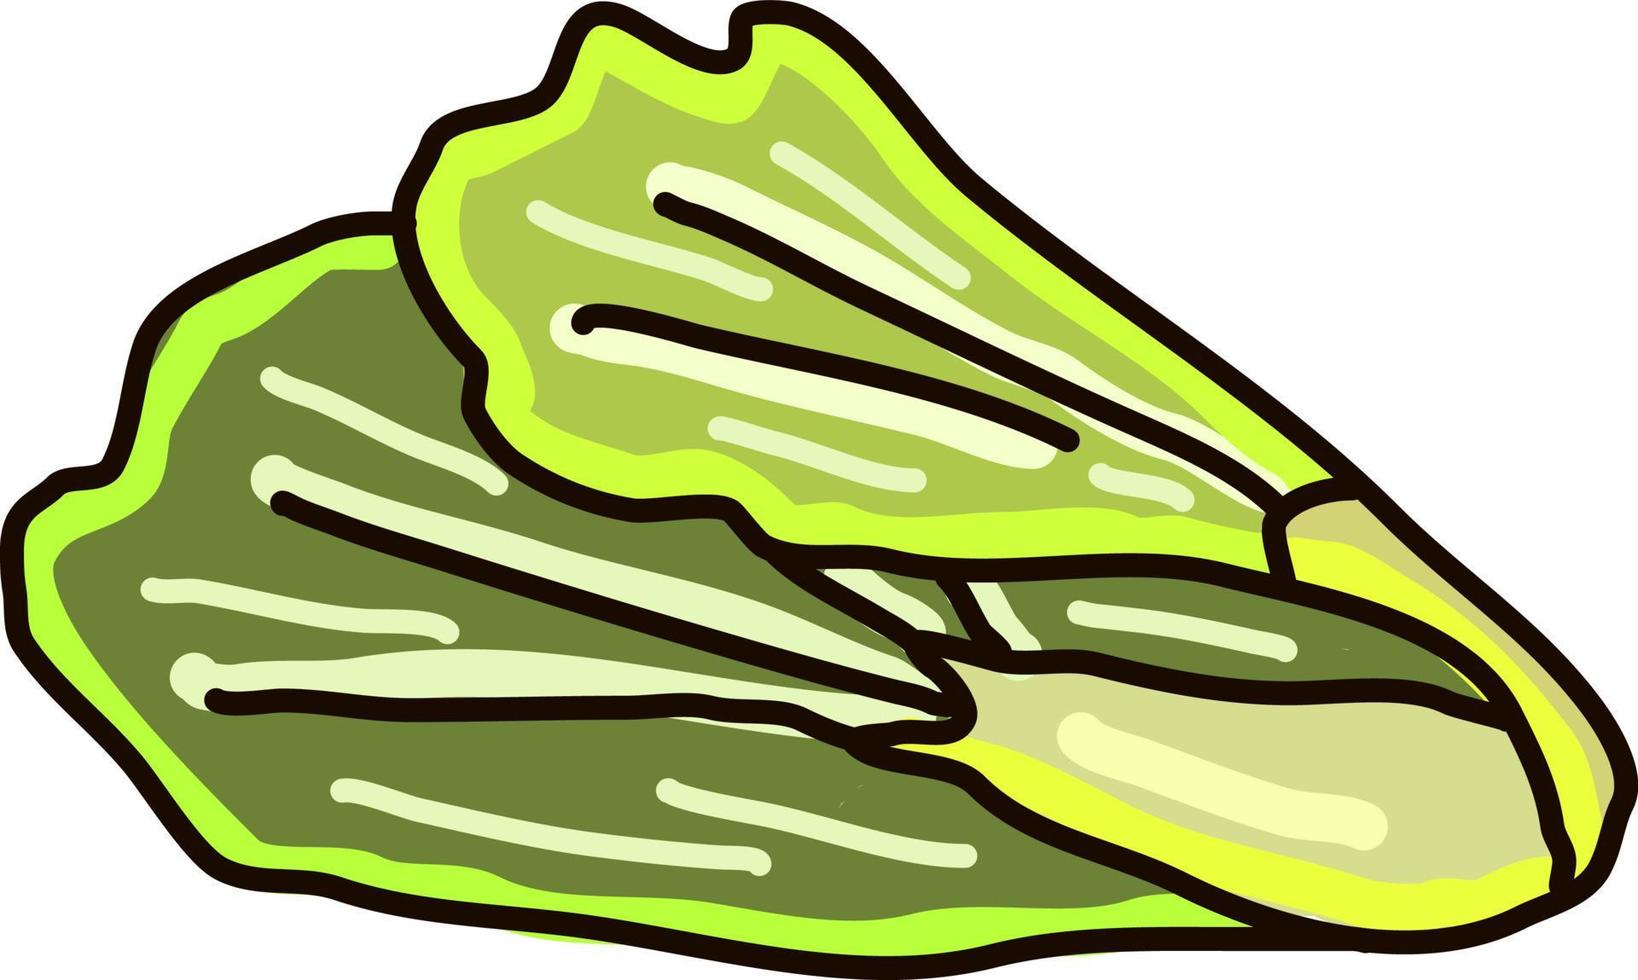 Green lettuce, illustration, vector on white background.